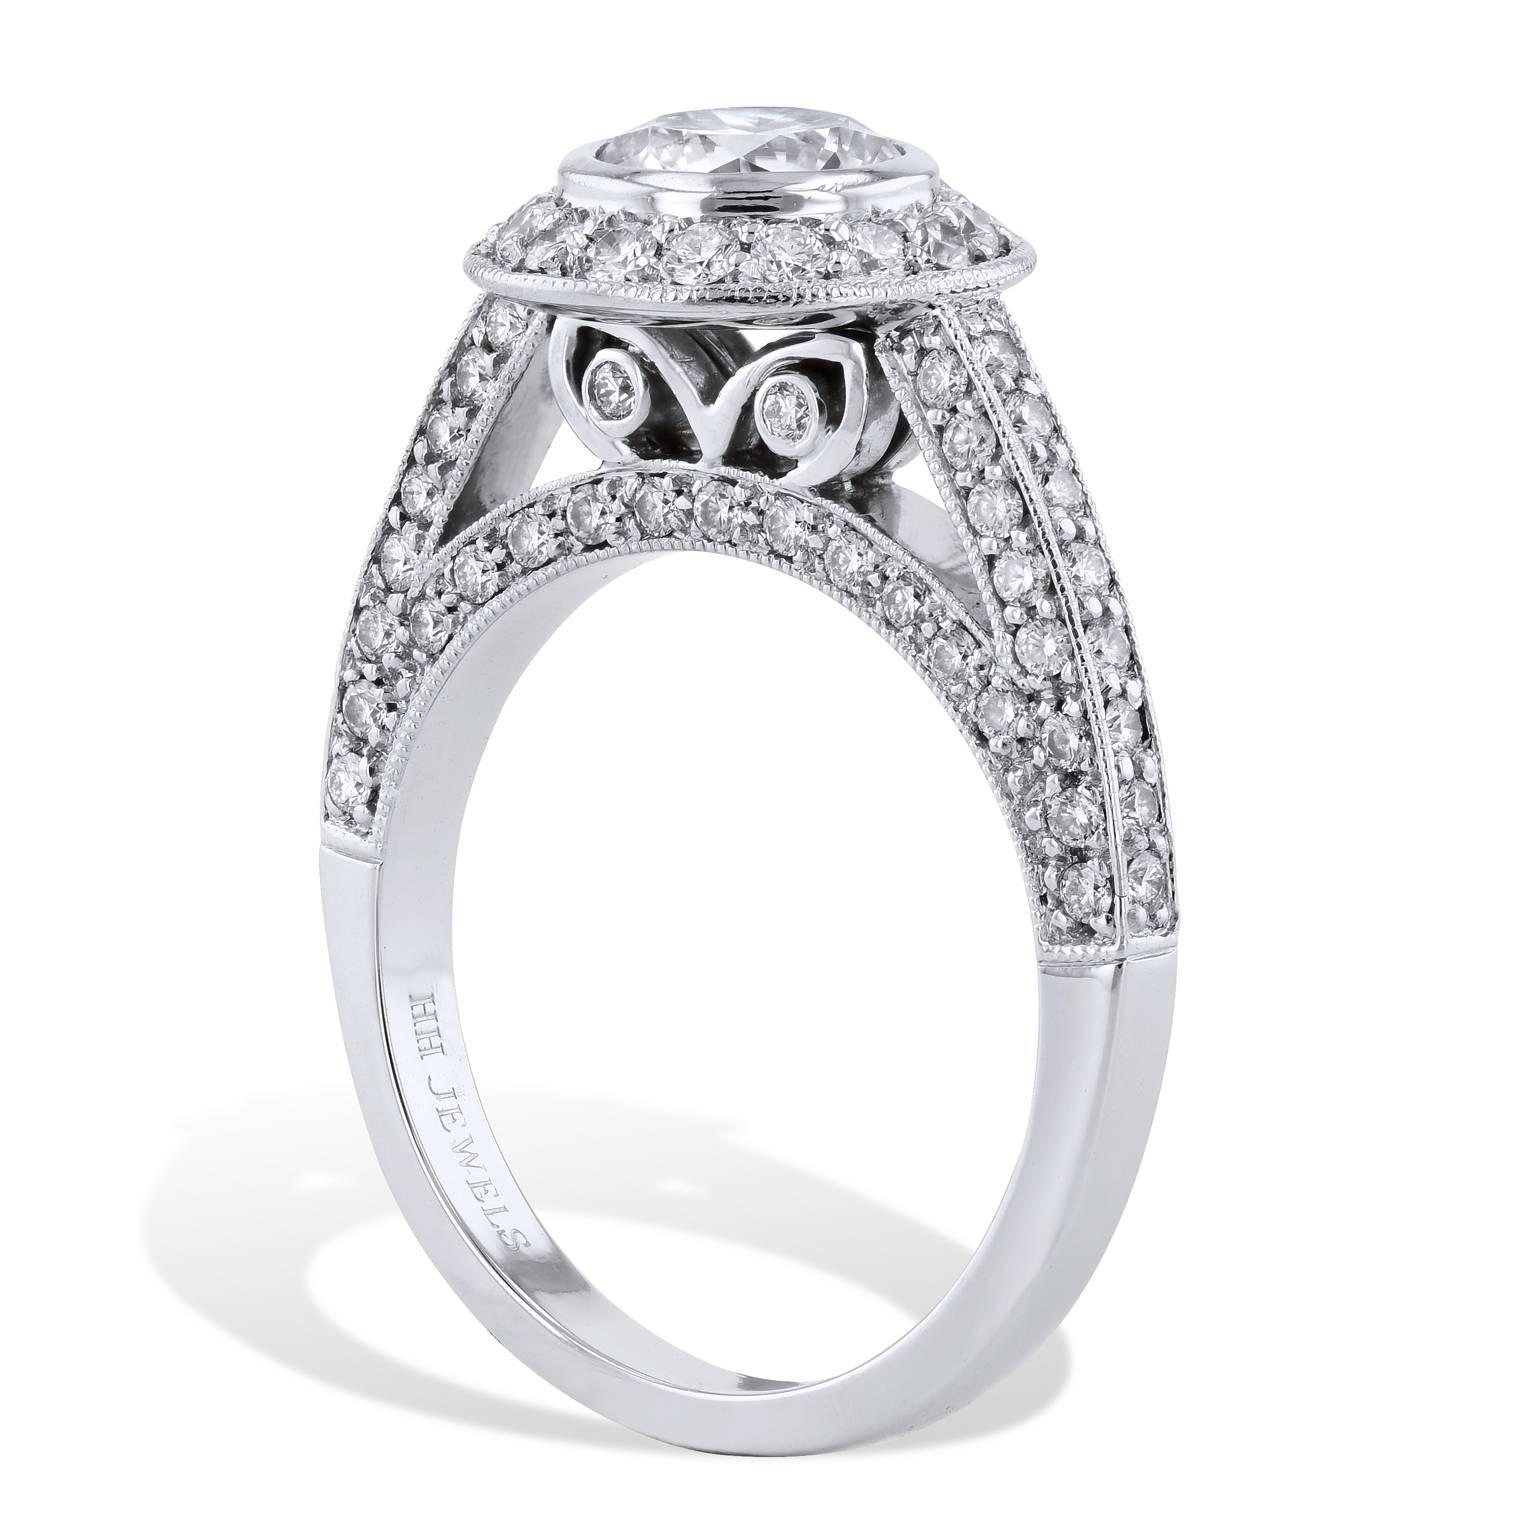 GIA zertifiziert 1,02 Karat Brillantschliff Lünette gesetzt Halo Diamant Verlobungsring 6

Dieser Ring ist eine handgefertigte Kreation von H&H Jewels. Hier ist also Ihre Chance, ein Stück kostbarer Eleganz mit diesem atemberaubenden